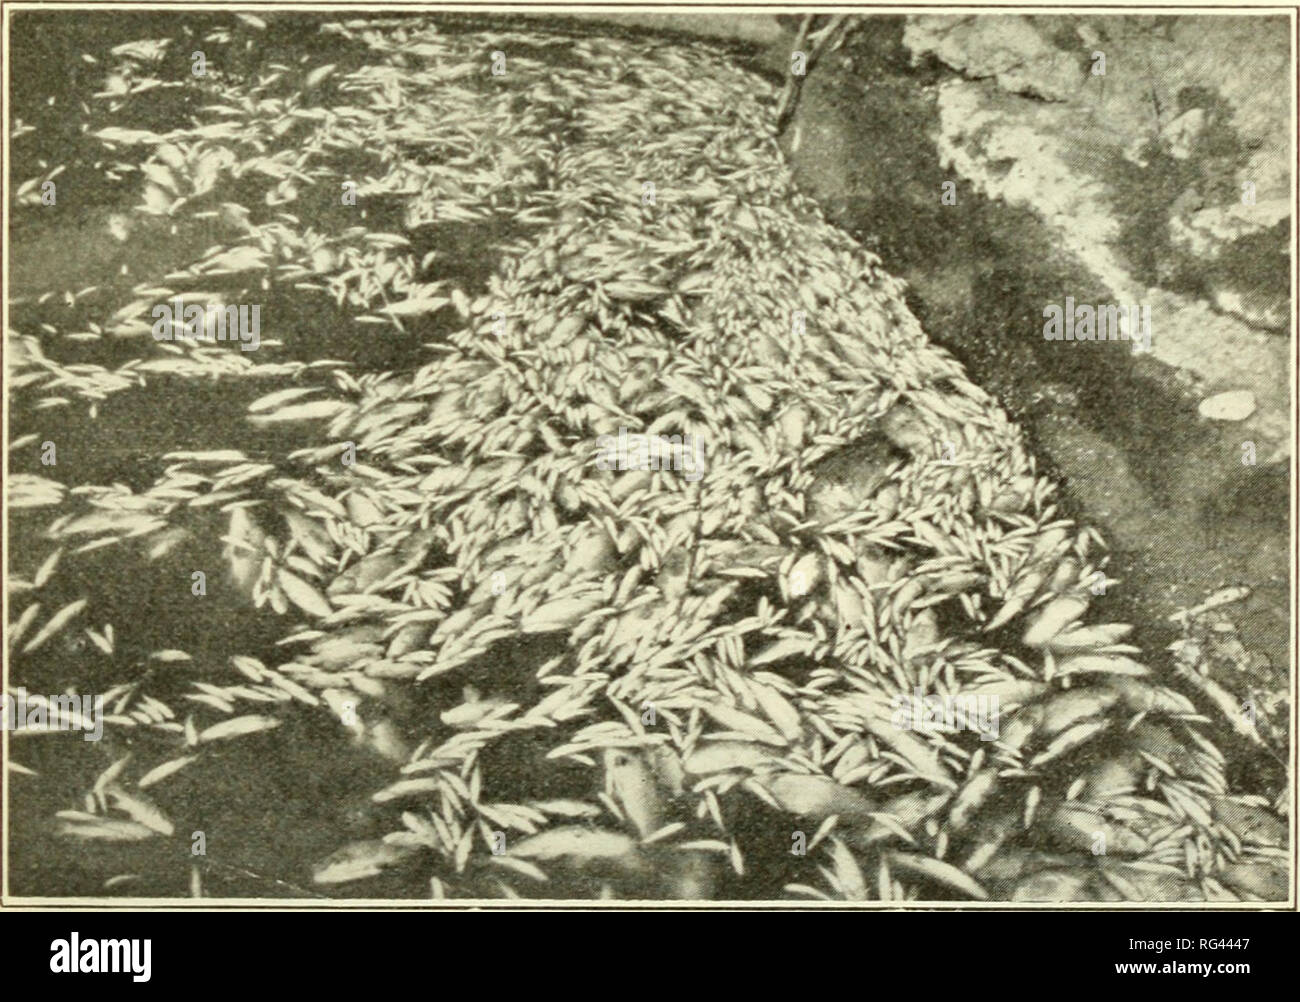 . Kalifornien Fisch und Wild. Fischerei - Kalifornien; Spiel und Spiel - Vögel - Kalifornien; Fische - Kalifornien; Tier Bevölkerungsgruppen; Pêches; Gibier; Poissons. TWENTY-EIGHTH BIENNIAL REPORT. 77 Eine Epidemie unter den räuberischen Tiere in El Dorado County im Frühjahr 1924 wurde das Ergebnis der Tollwut, wie durch einen positiven Test auf einem Kalifornien Gray fox hat gezeigt wurde. Die Abteilung weiterhin Daten über die jährliche Rehe töten zu kompilieren, auf die Jagd Unfälle und über die Arbeit der wissenschaftlichen Sammler. Respektvoll eingereicht. Harold C. Bryant, in Bildung, Öffentlichkeitsarbeit und Forschung. SA Stockfoto